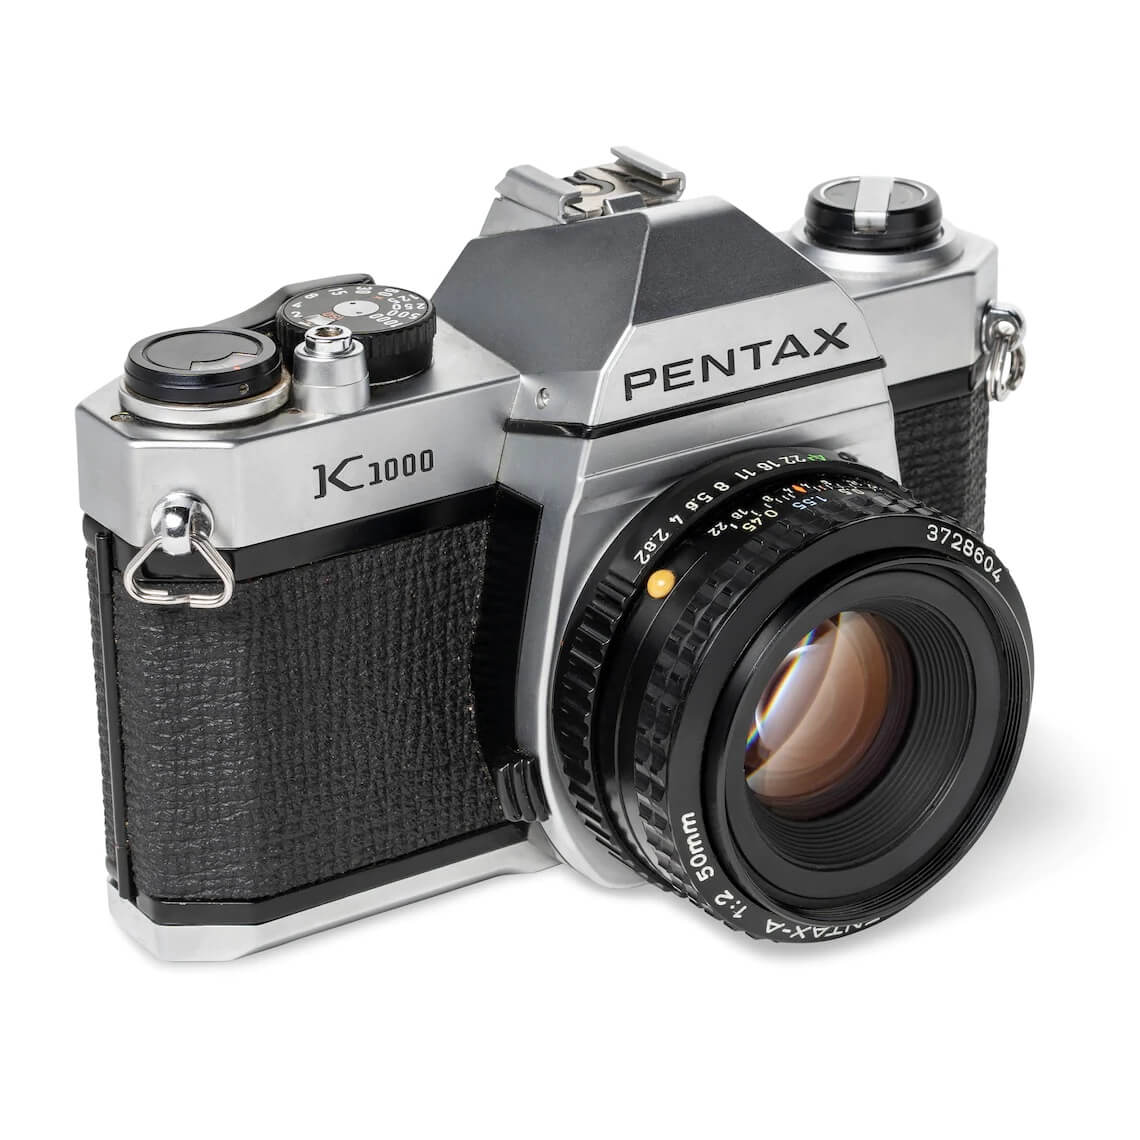 Ricoh announces new Pentax film camera